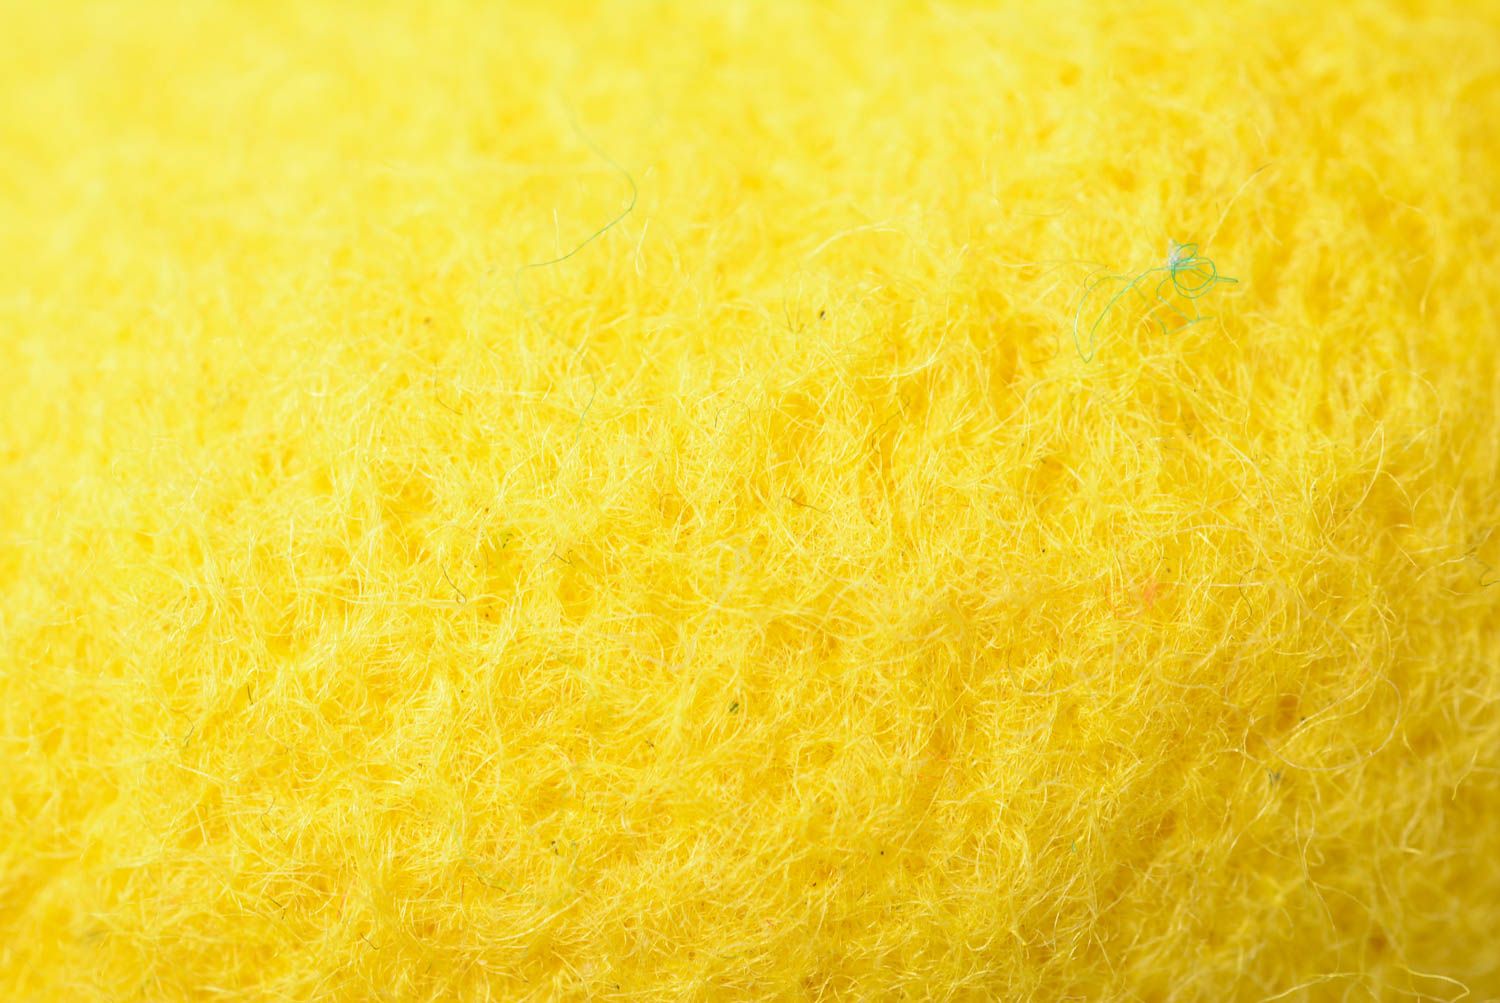 Мягкая игрушка ручной работы валяная игрушка лимон желтый игрушка из шерсти фото 5